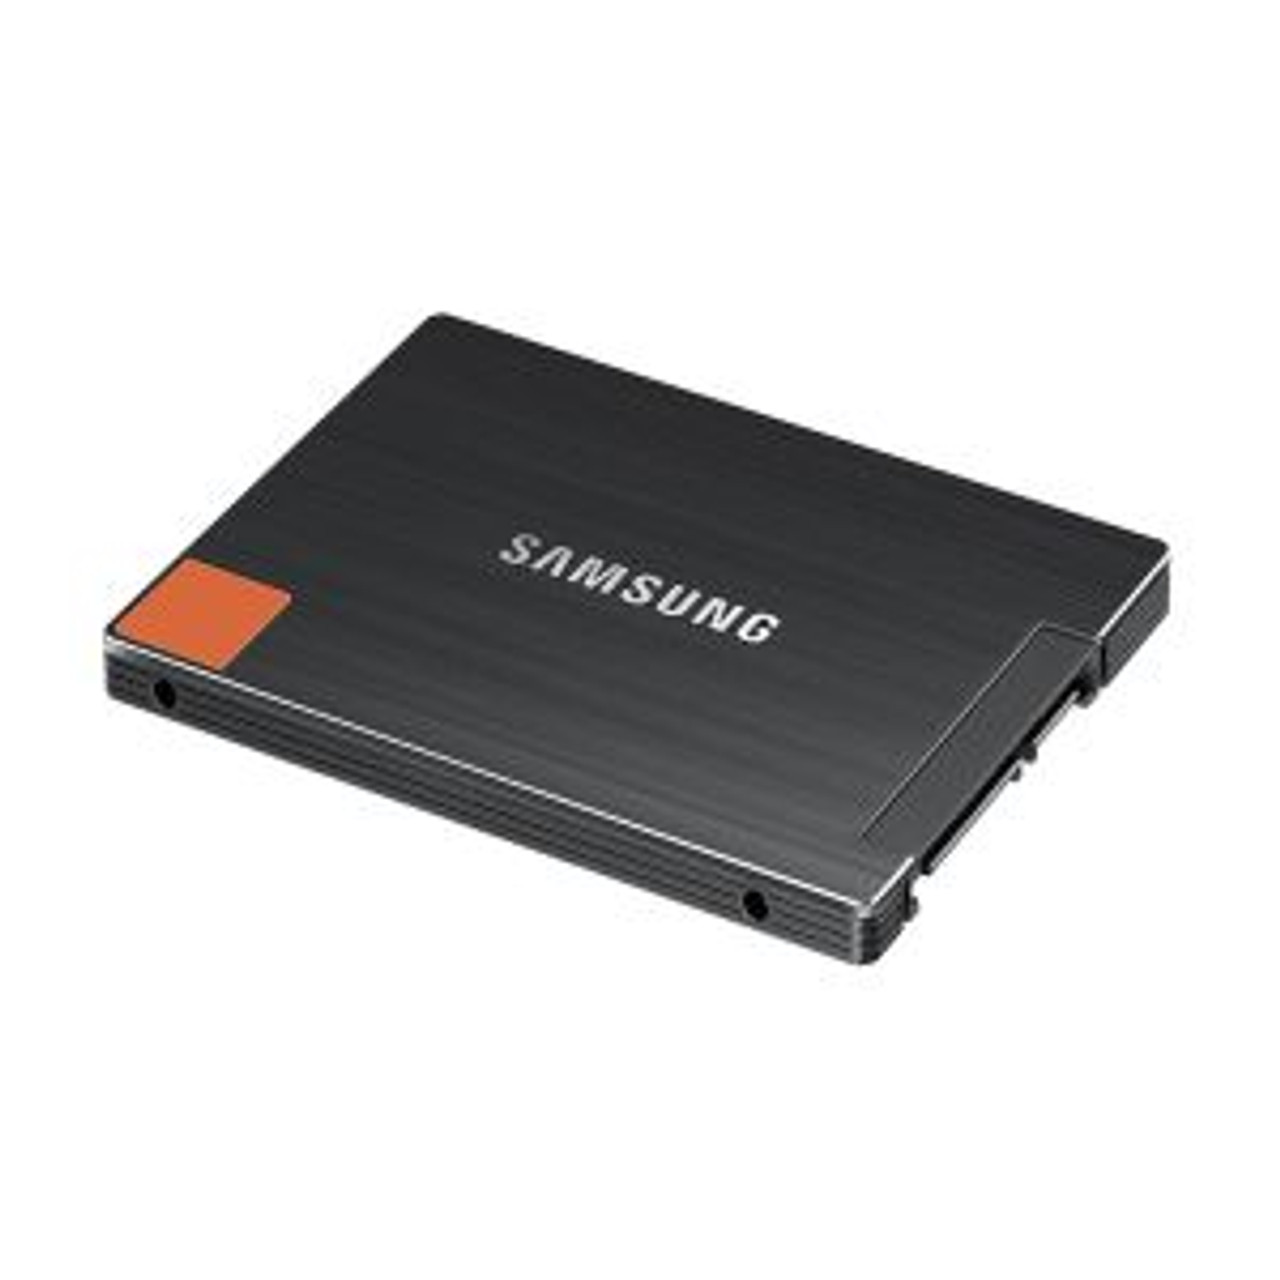 MZ-7PC256B/IT | Samsung | 830 Series 256GB MLC SATA 6Gb/s 2.5-inch Solid State Drive (SSD)